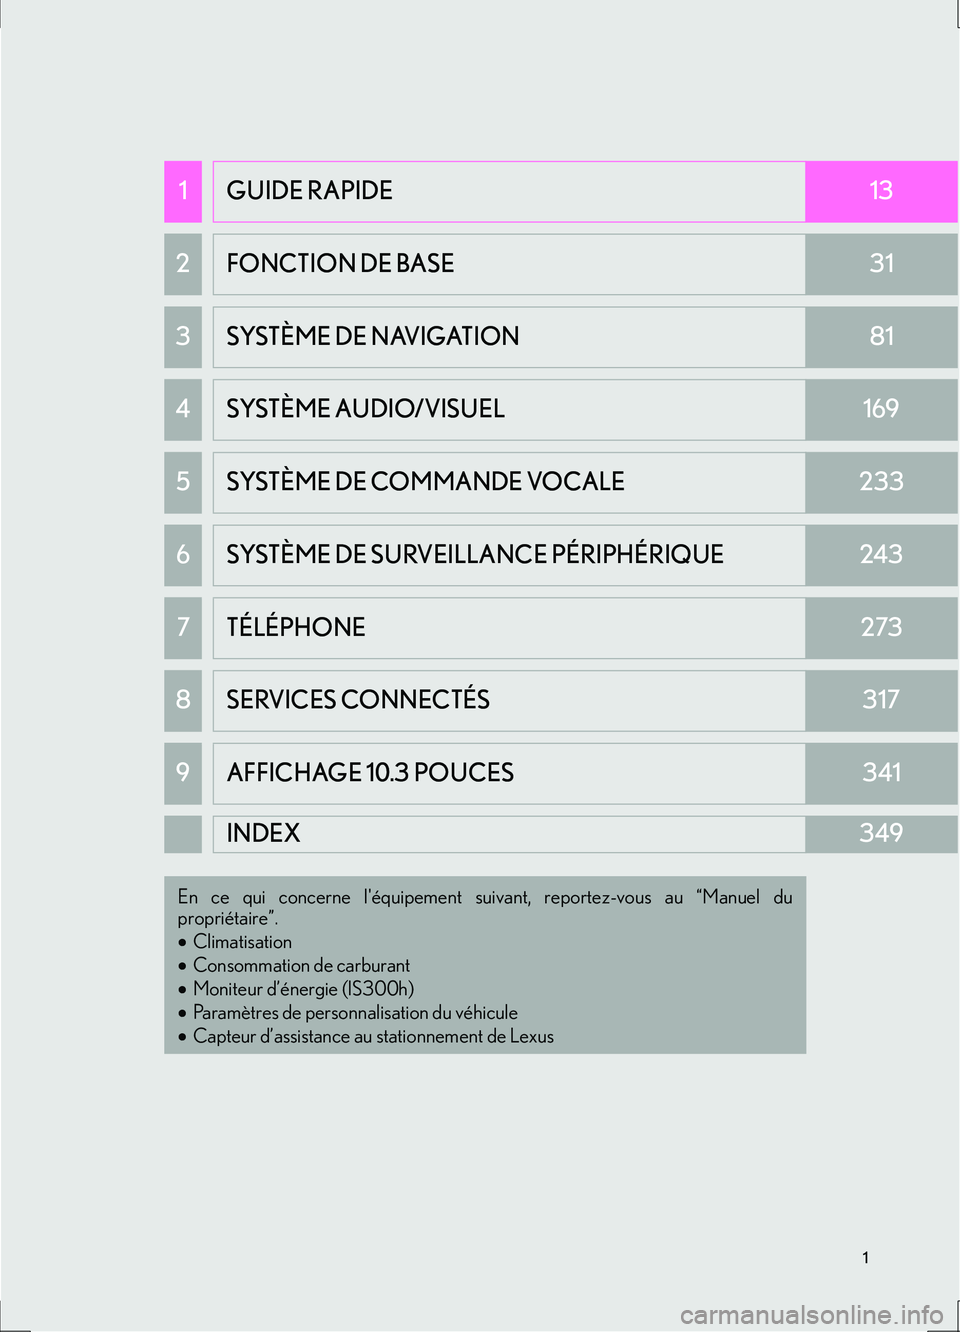 Lexus IS300h 2017  Système de navigation manuel du propriétaire (in French) 1
IS_Navi_EK
1GUIDE RAPIDE13
2 FONCTION DE BASE31
3 SYSTÈME DE NAVIGATION81
4SYSTÈME AUDIO/VISUEL169
5SYSTÈME DE COMMANDE VOCALE233
6SYSTÈME DE SURVEILLANCE PÉRIPHÉRIQUE243
7TÉLÉPHONE273
8 SER